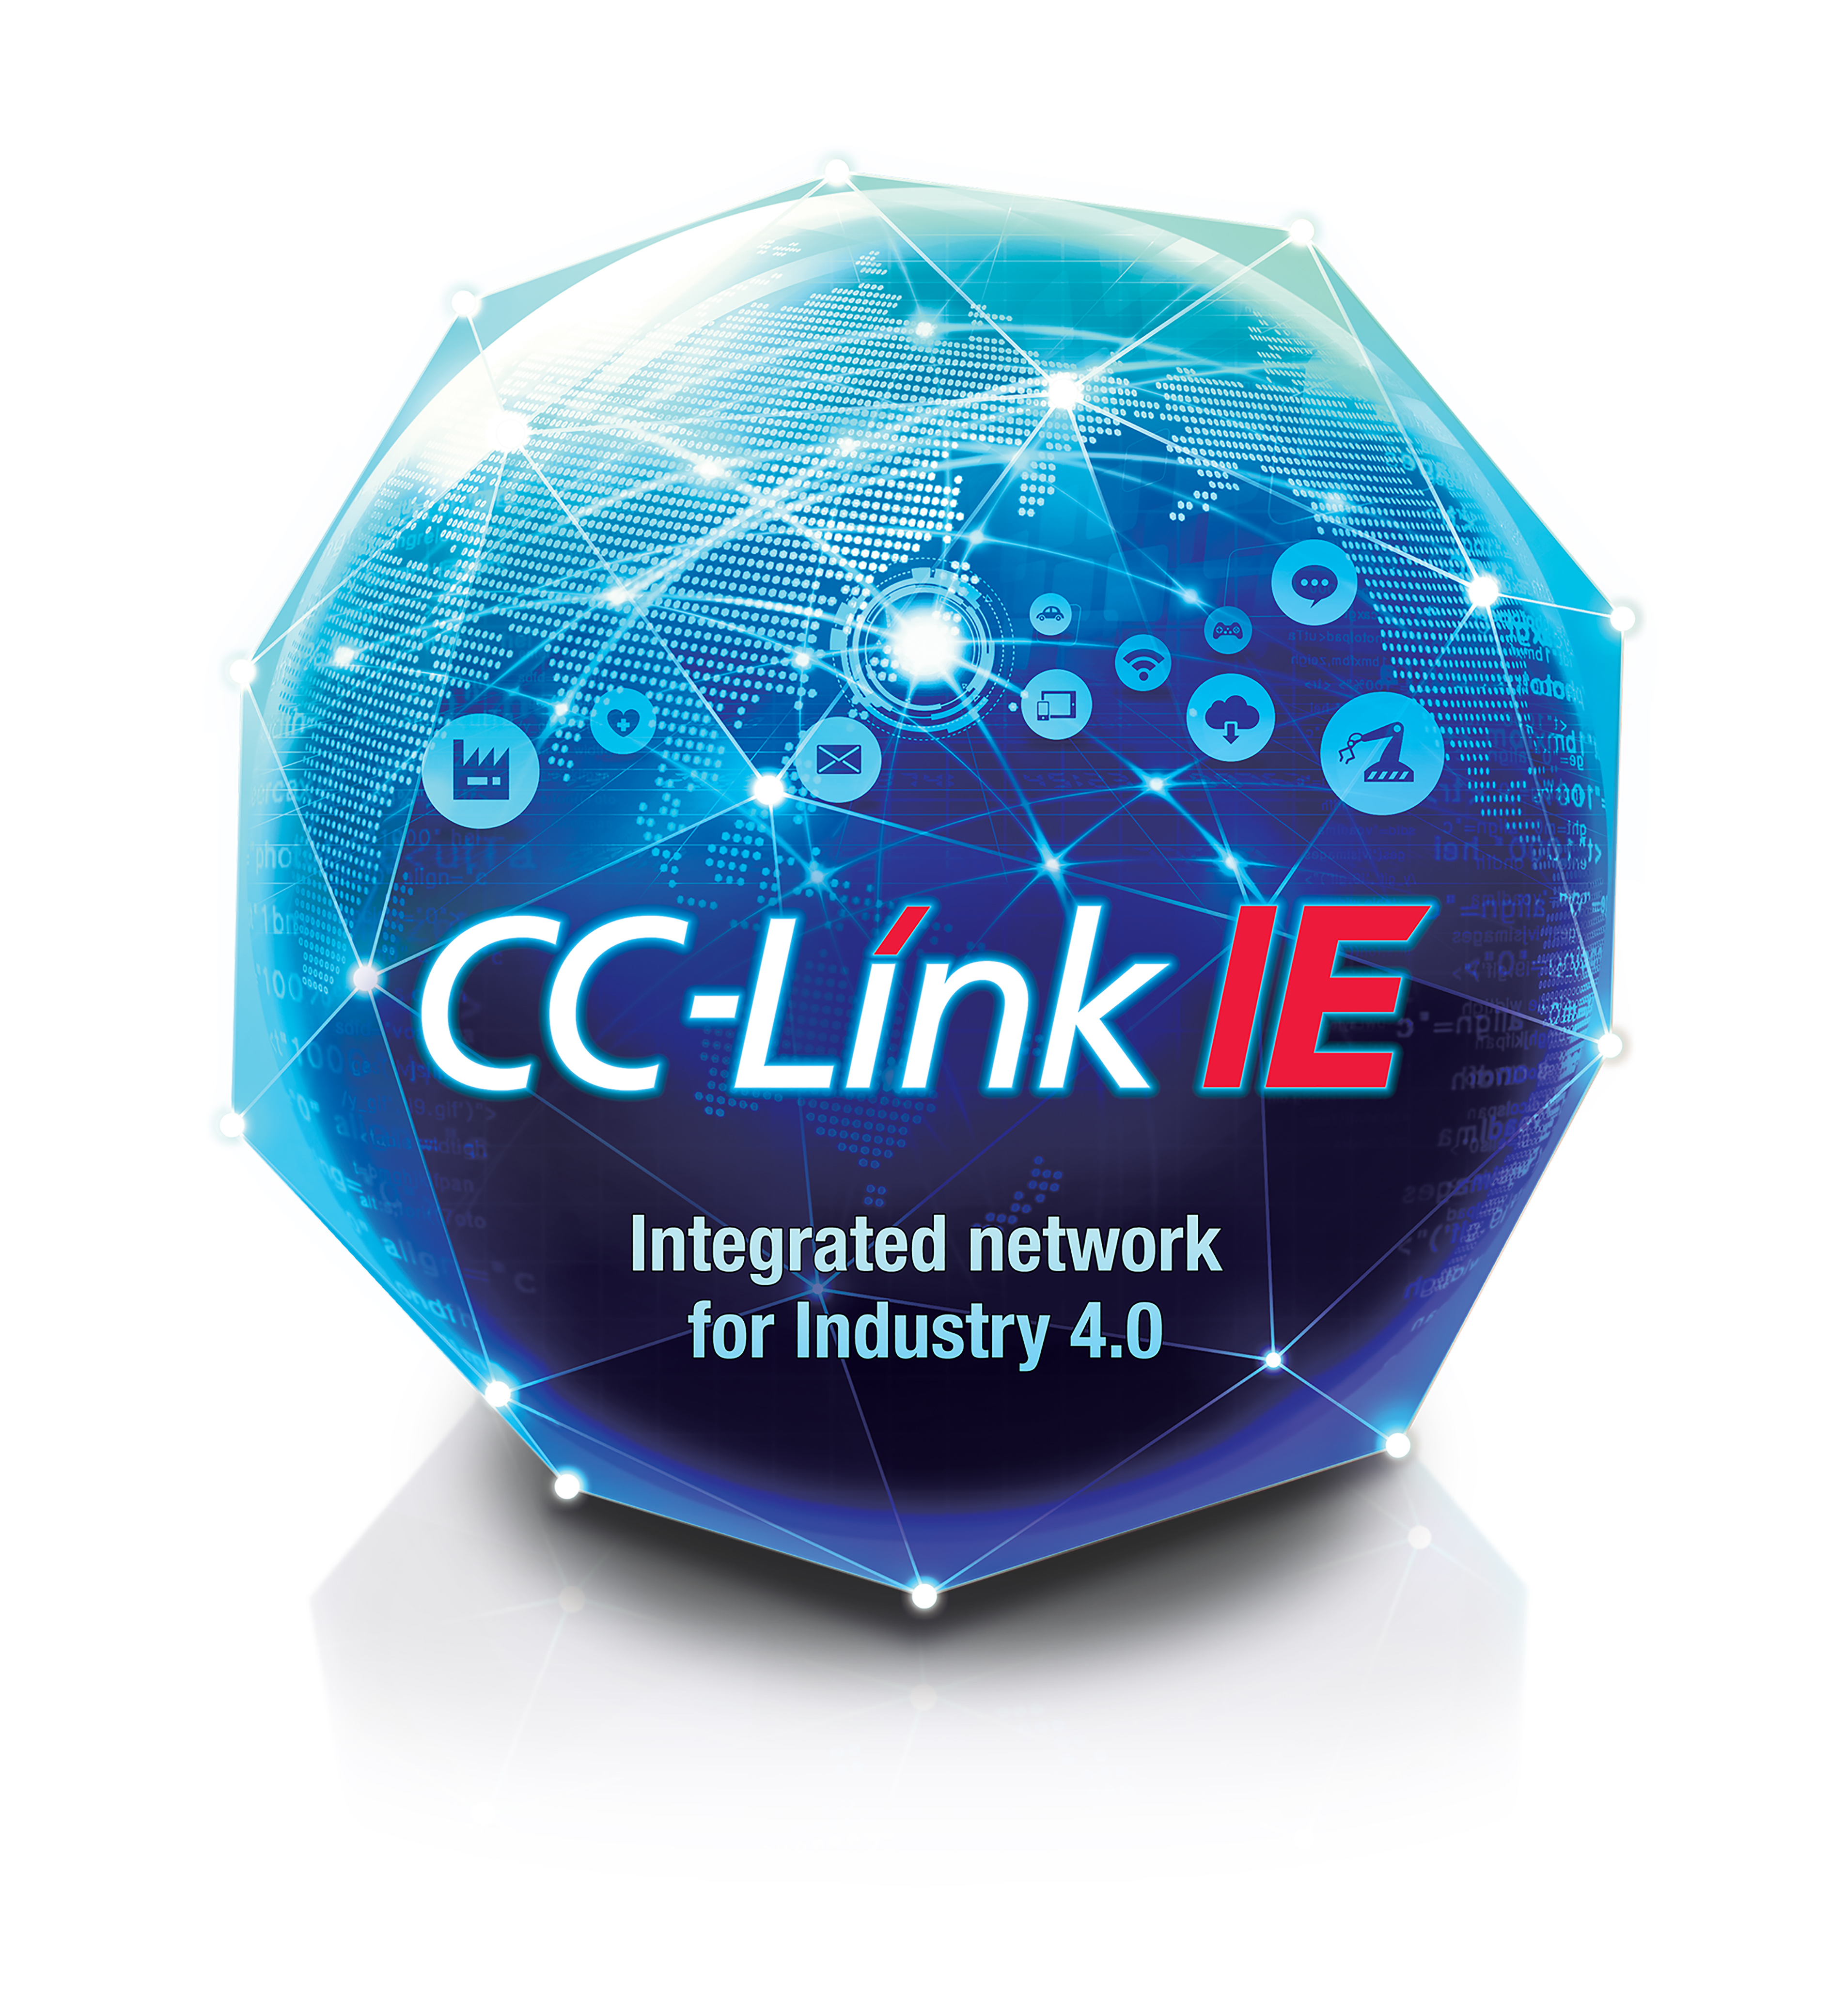 CC-Link IE es un Ethernet industrial que admite dispositivos de 1 Gbps y 100 Mbps y forma parte de la familia CC-Link de soluciones de red industrial abierta.